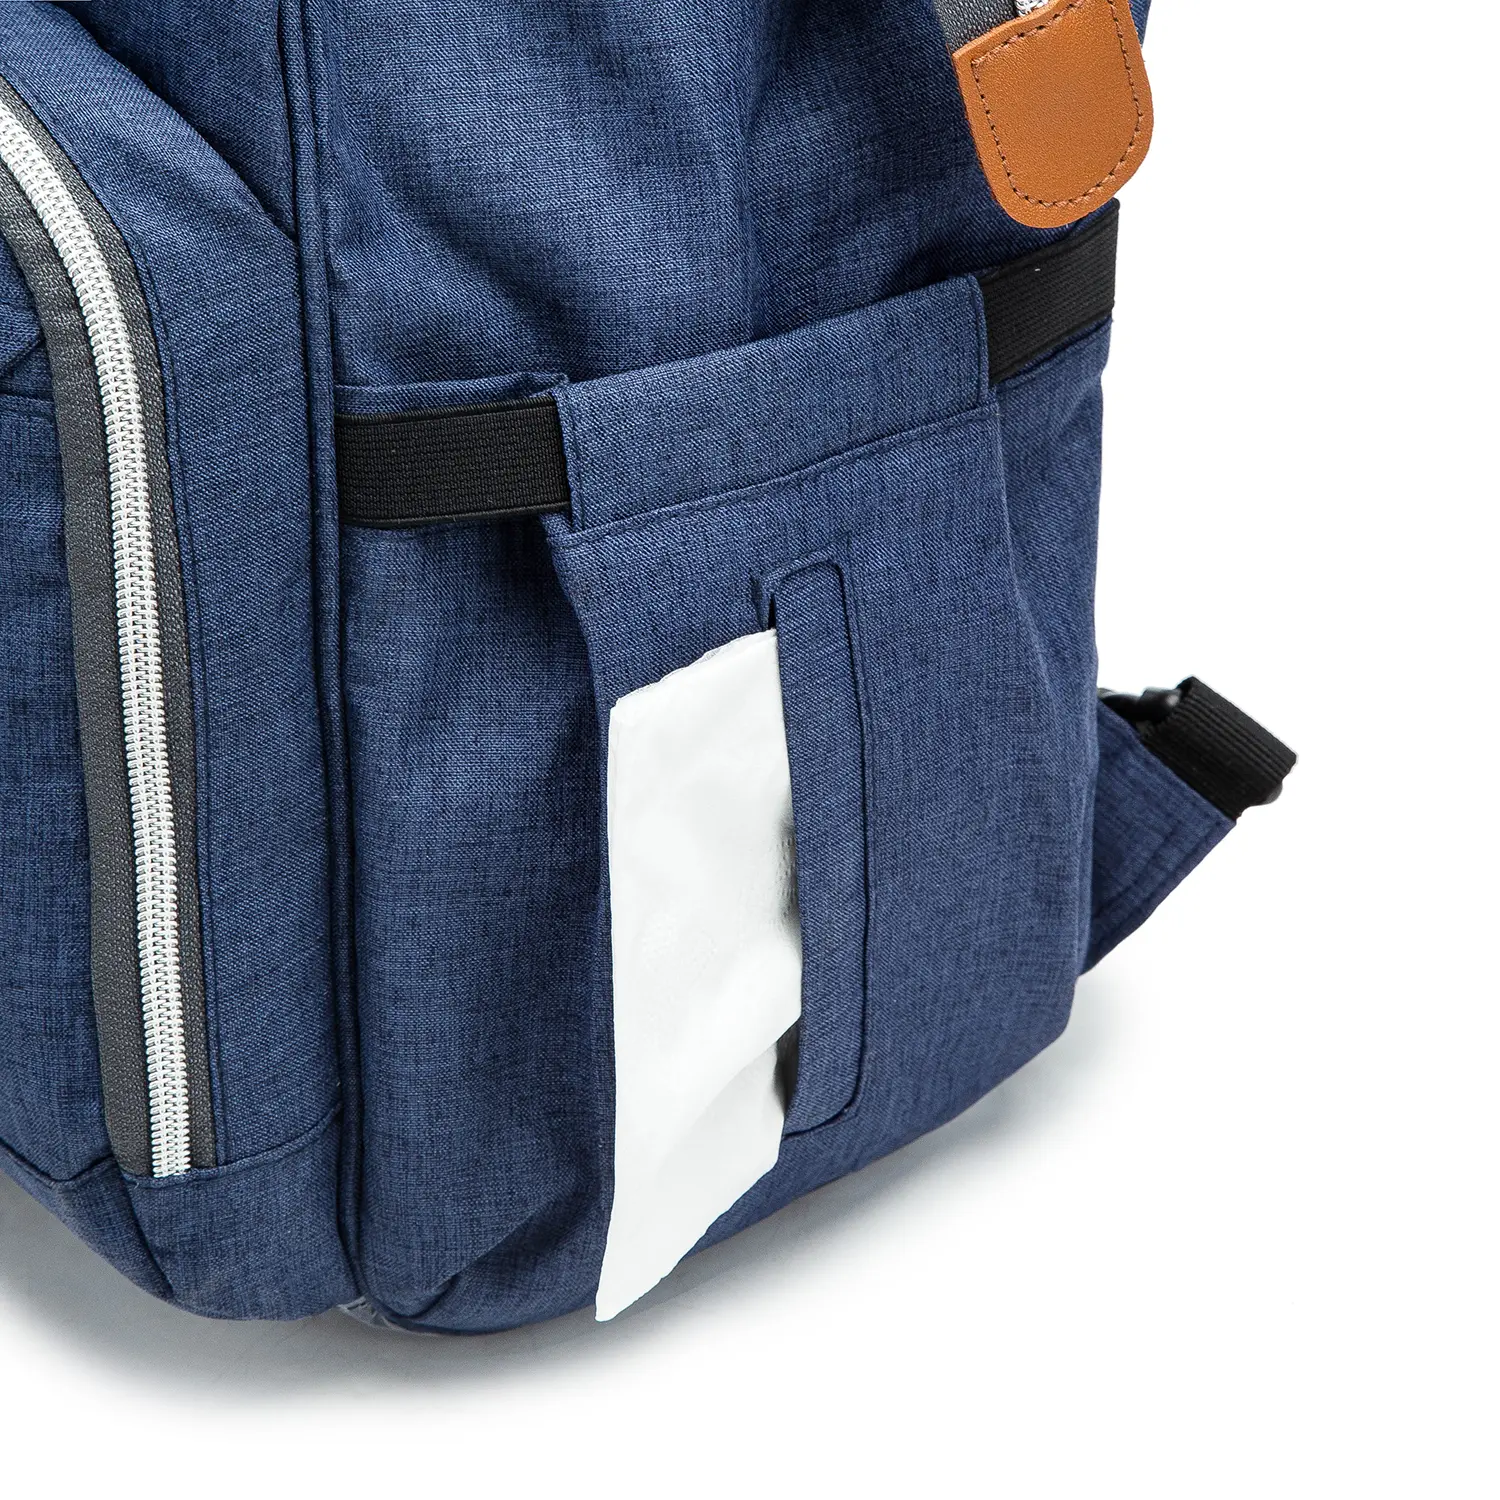 BaBee pelenkázó hátizsák, hátitáska, pelenkázótáska kék színben (BABEE-M3-BLUE)